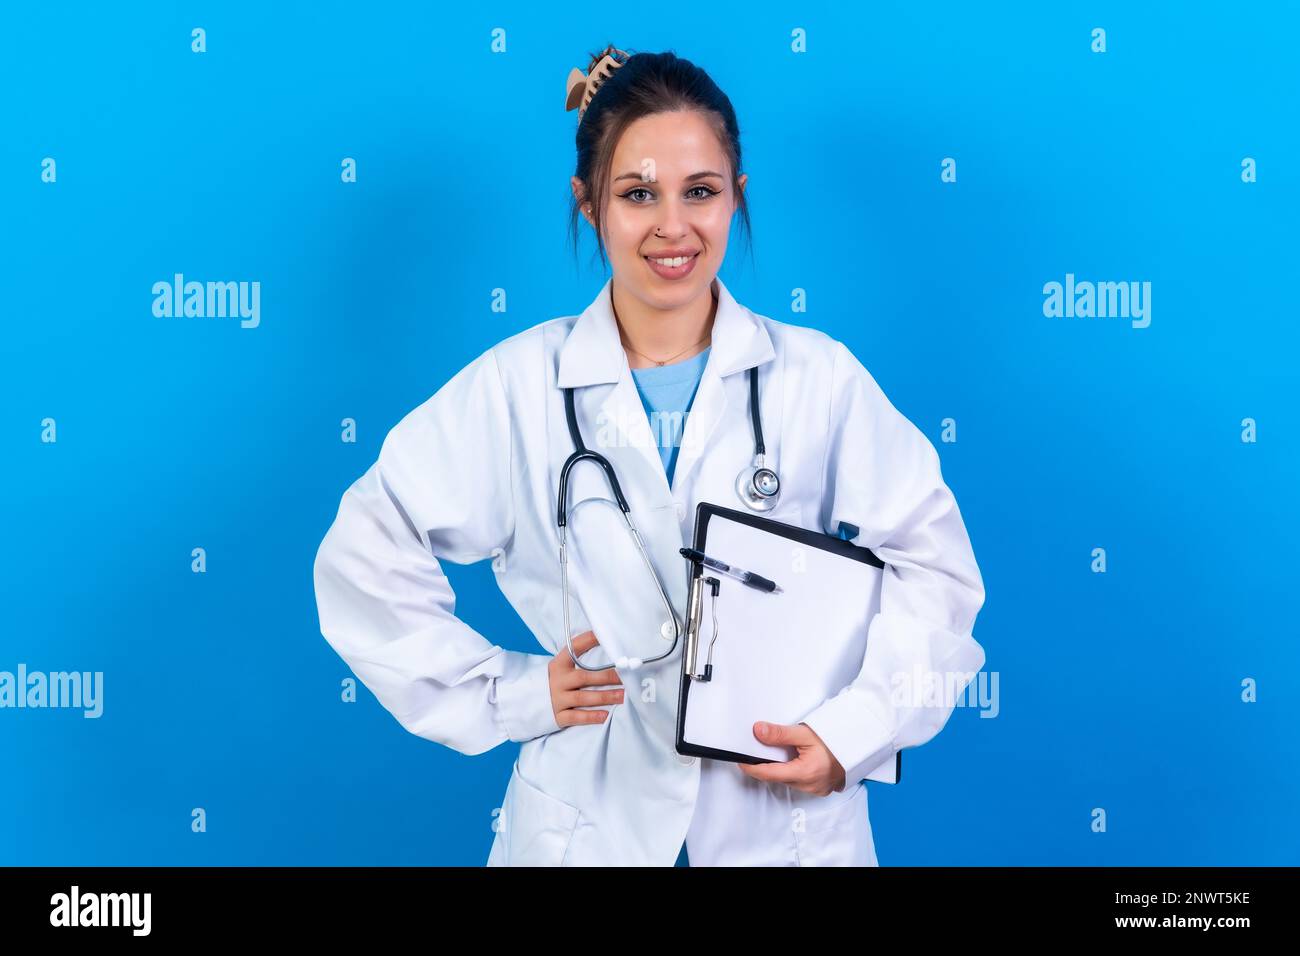 Portrait de femme souriante médecin en robe médicale debout isolée sur bleu, concept de médecine Banque D'Images